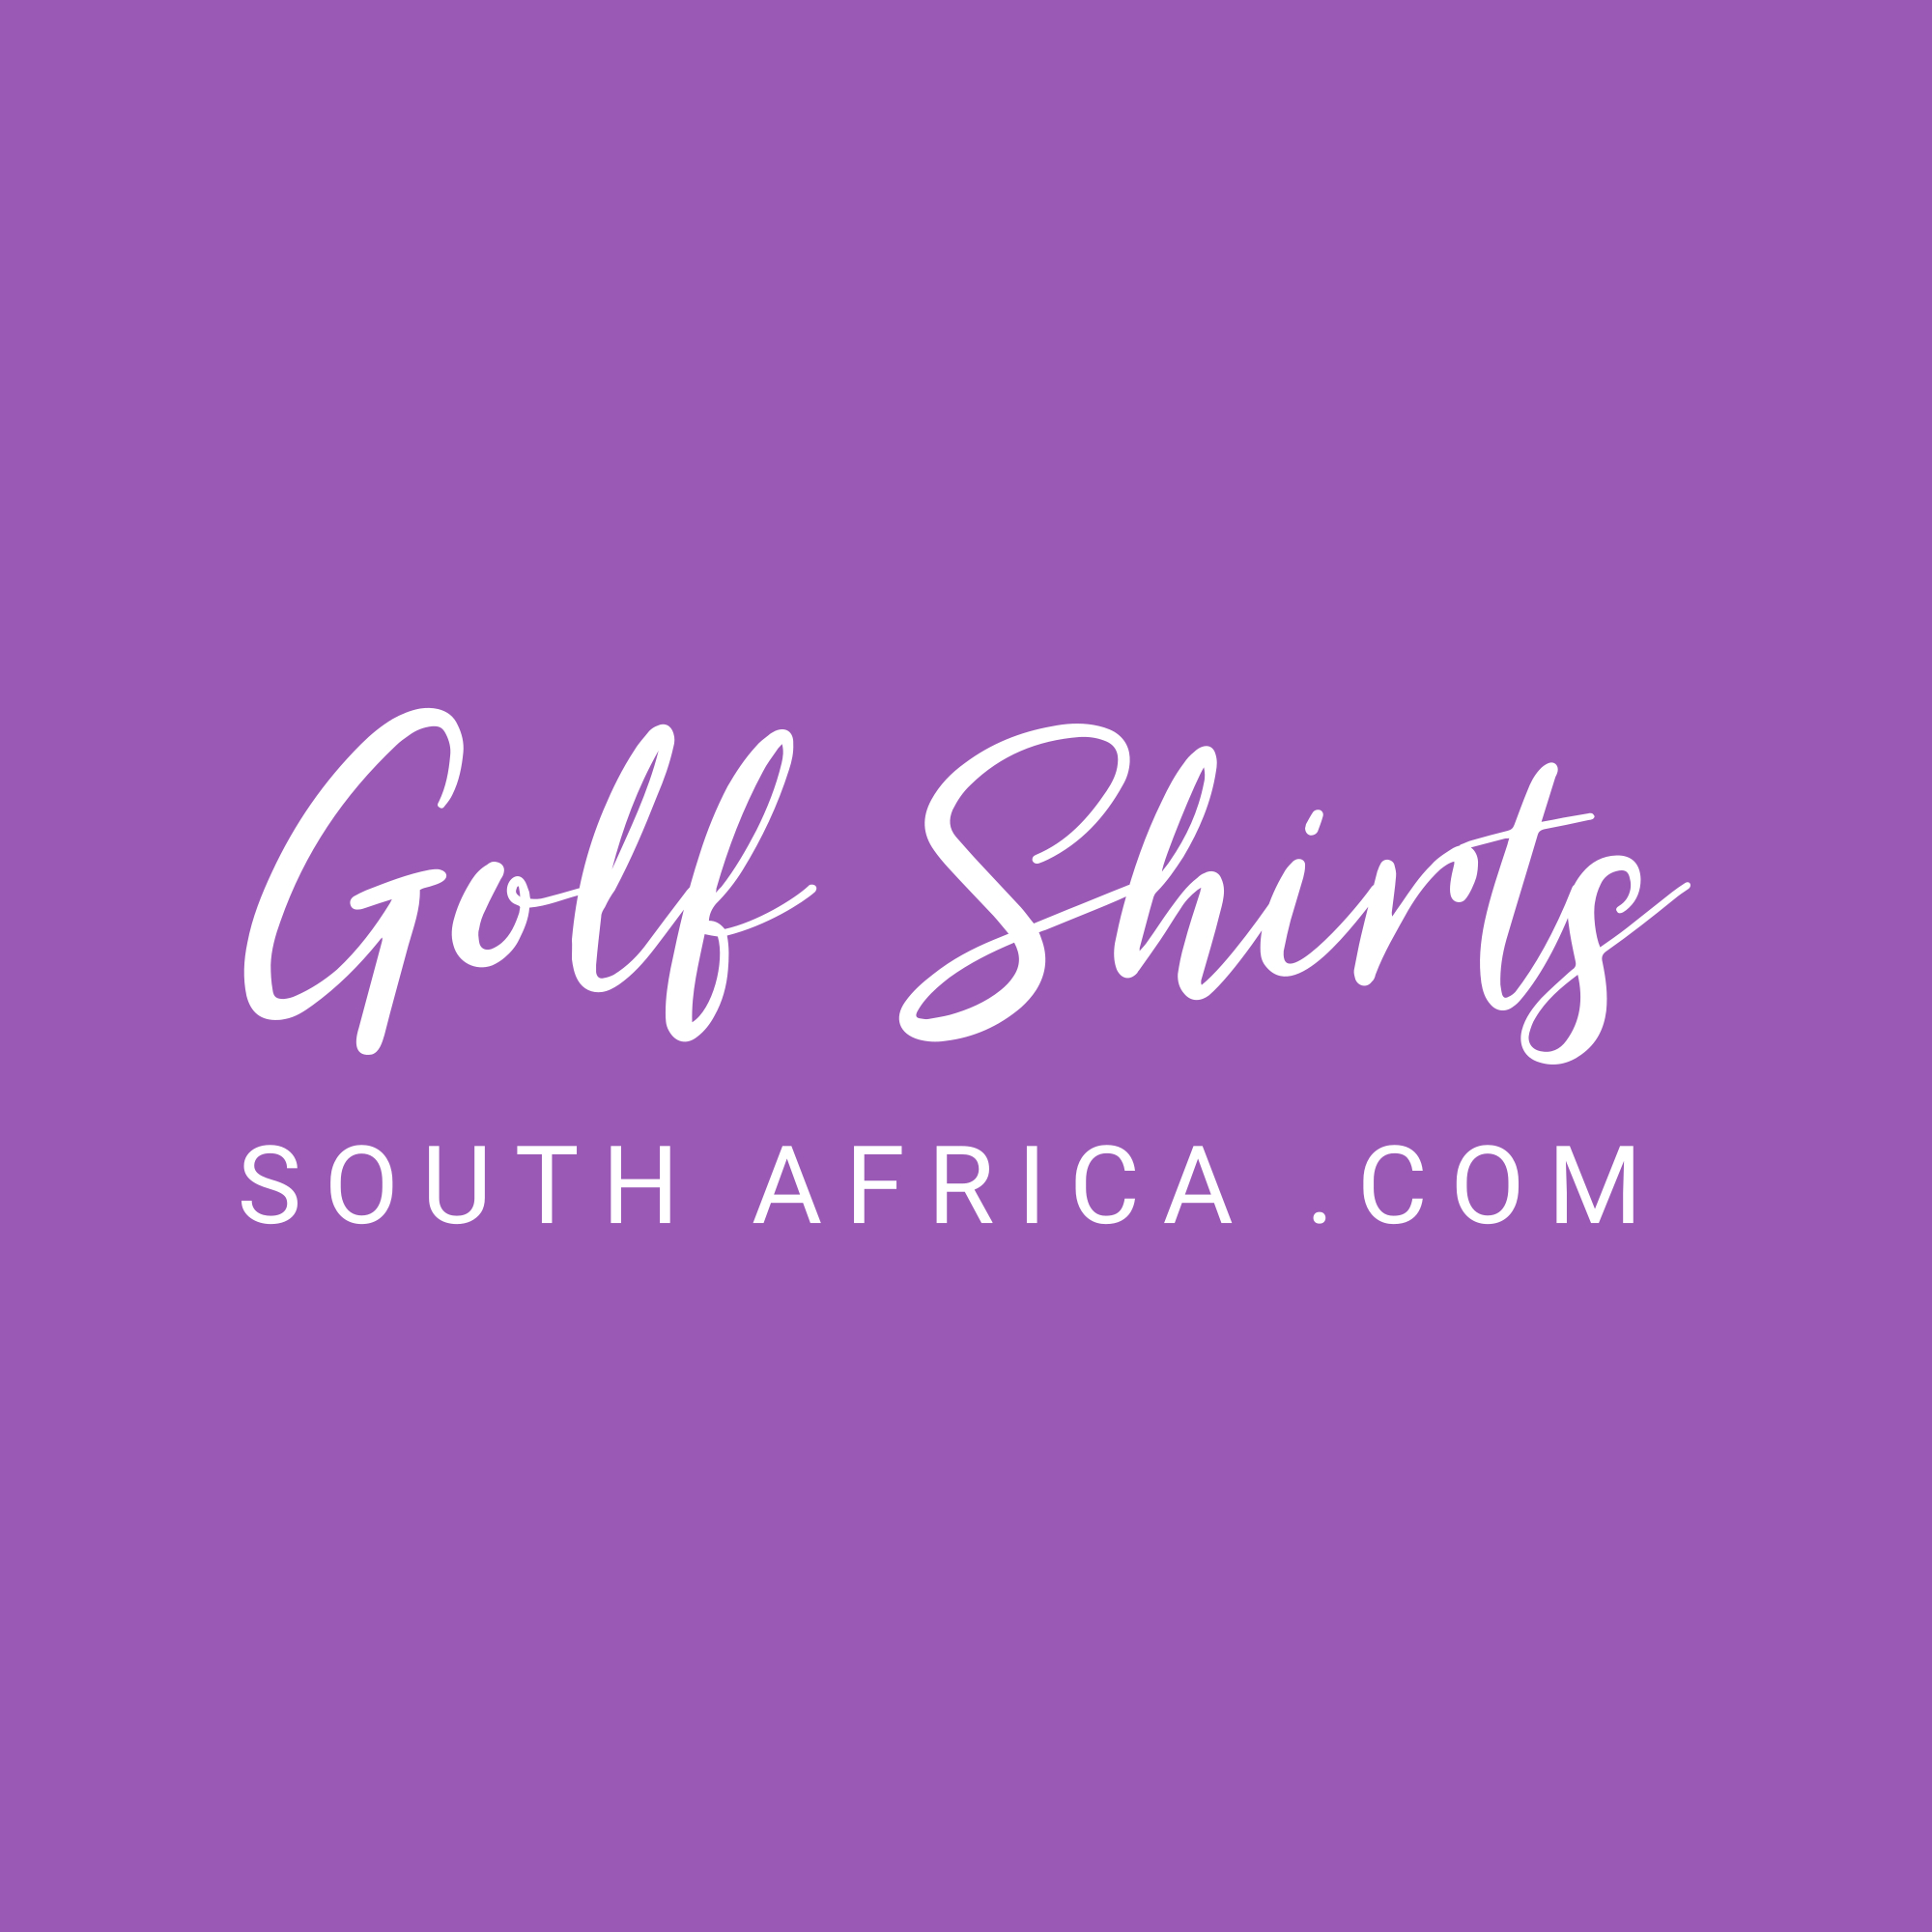 Golf Shirts SA